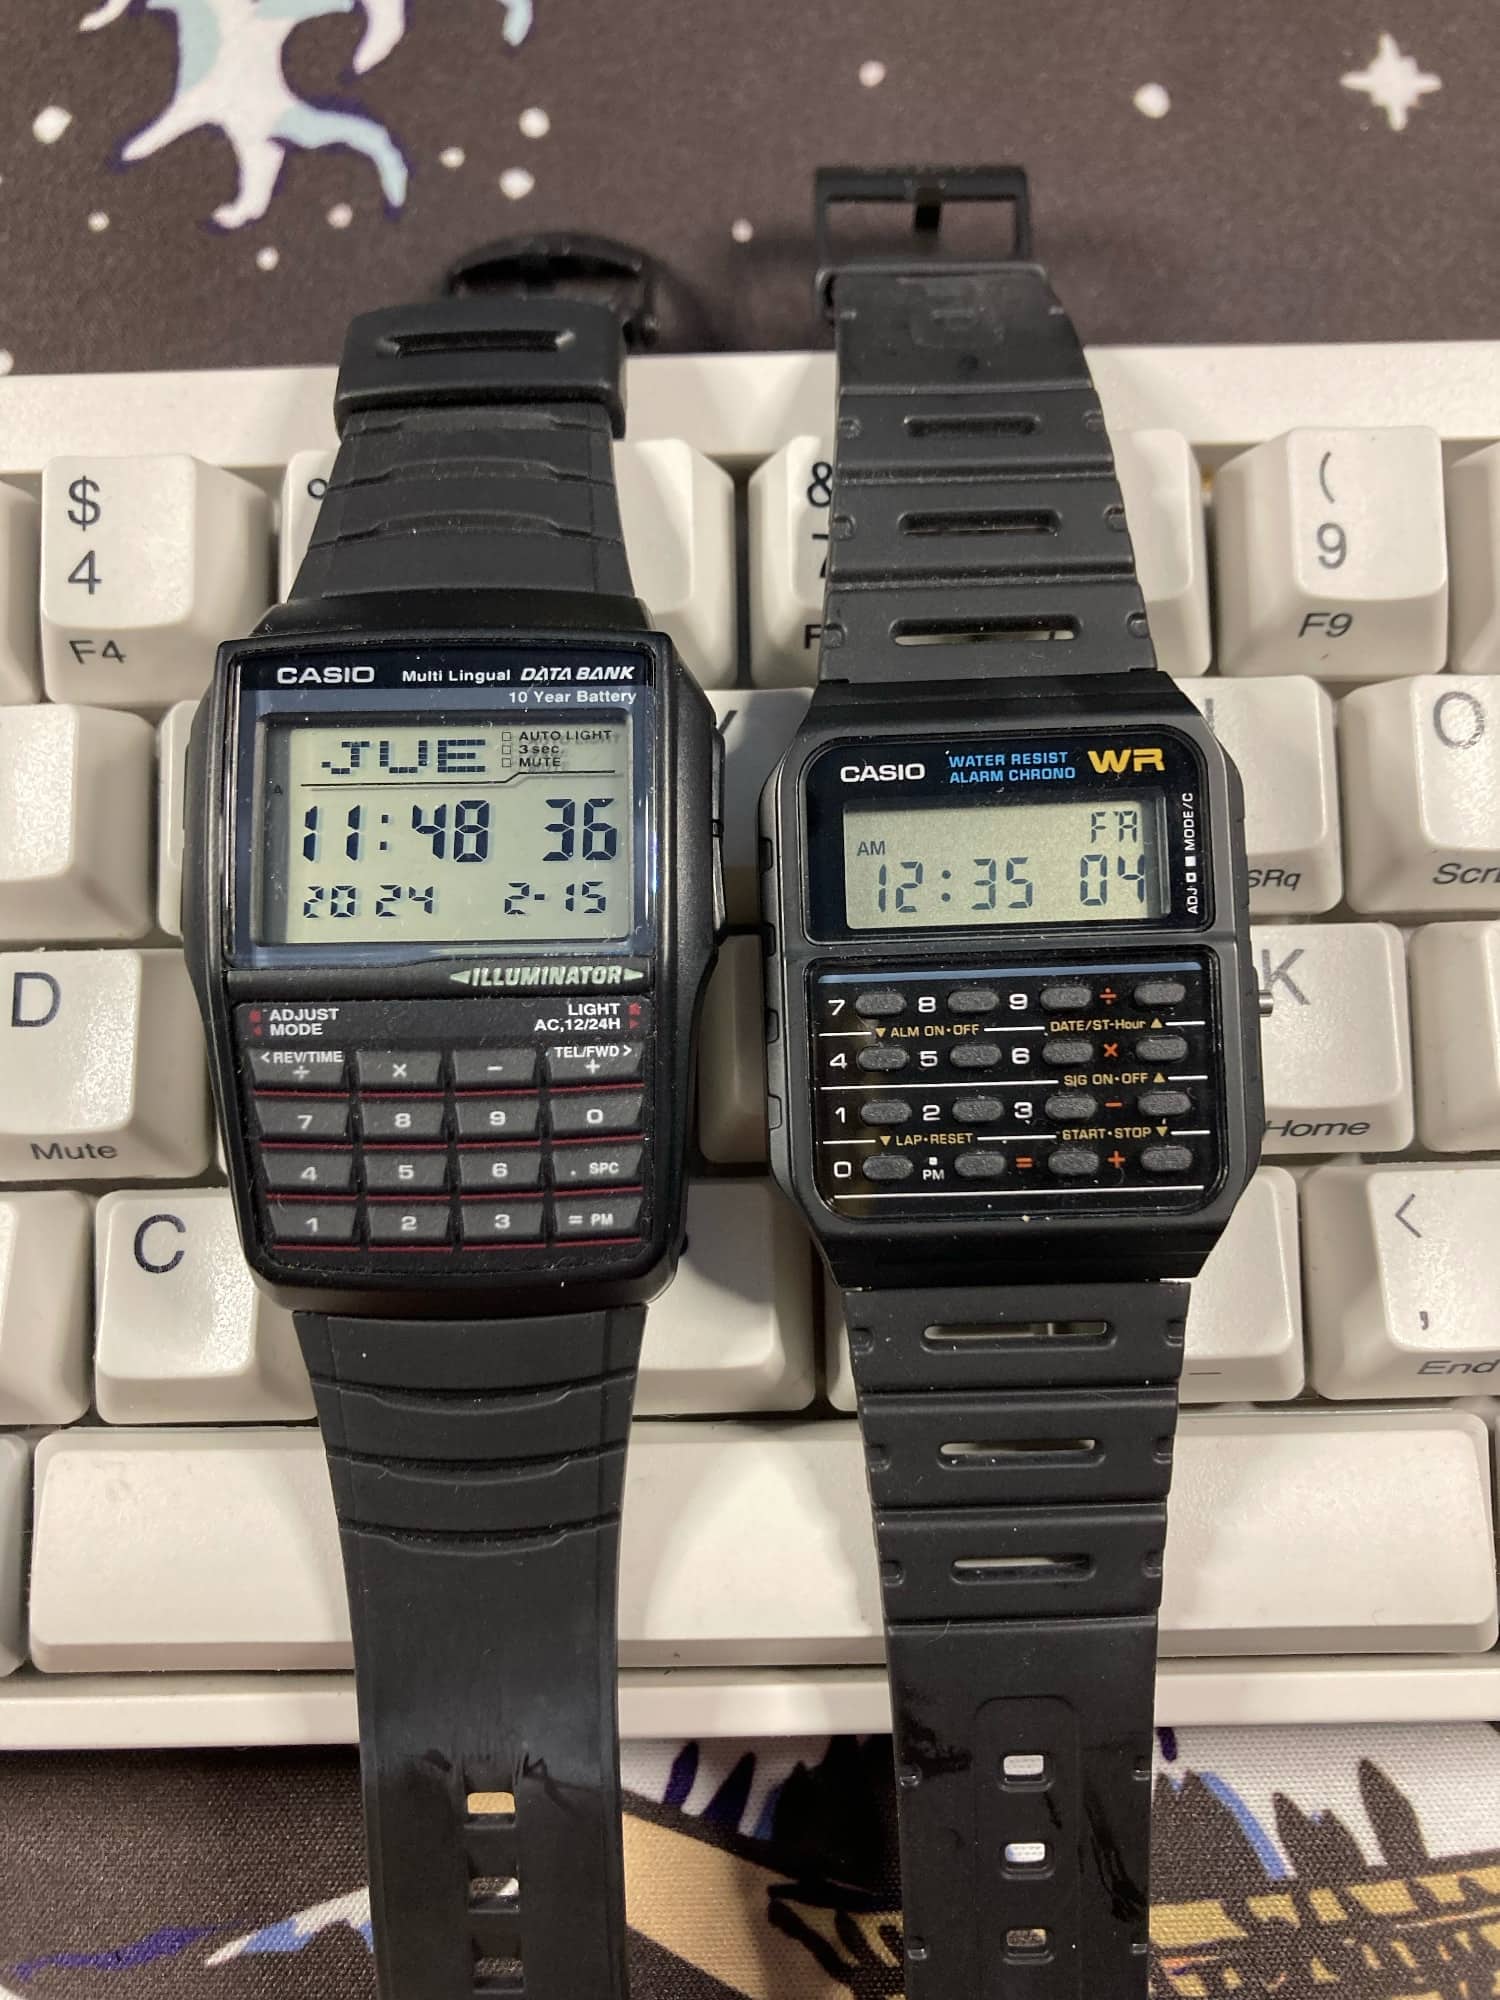 Los relojes calculadora de Casio: Casio dbc-32 y Casio ca-53w